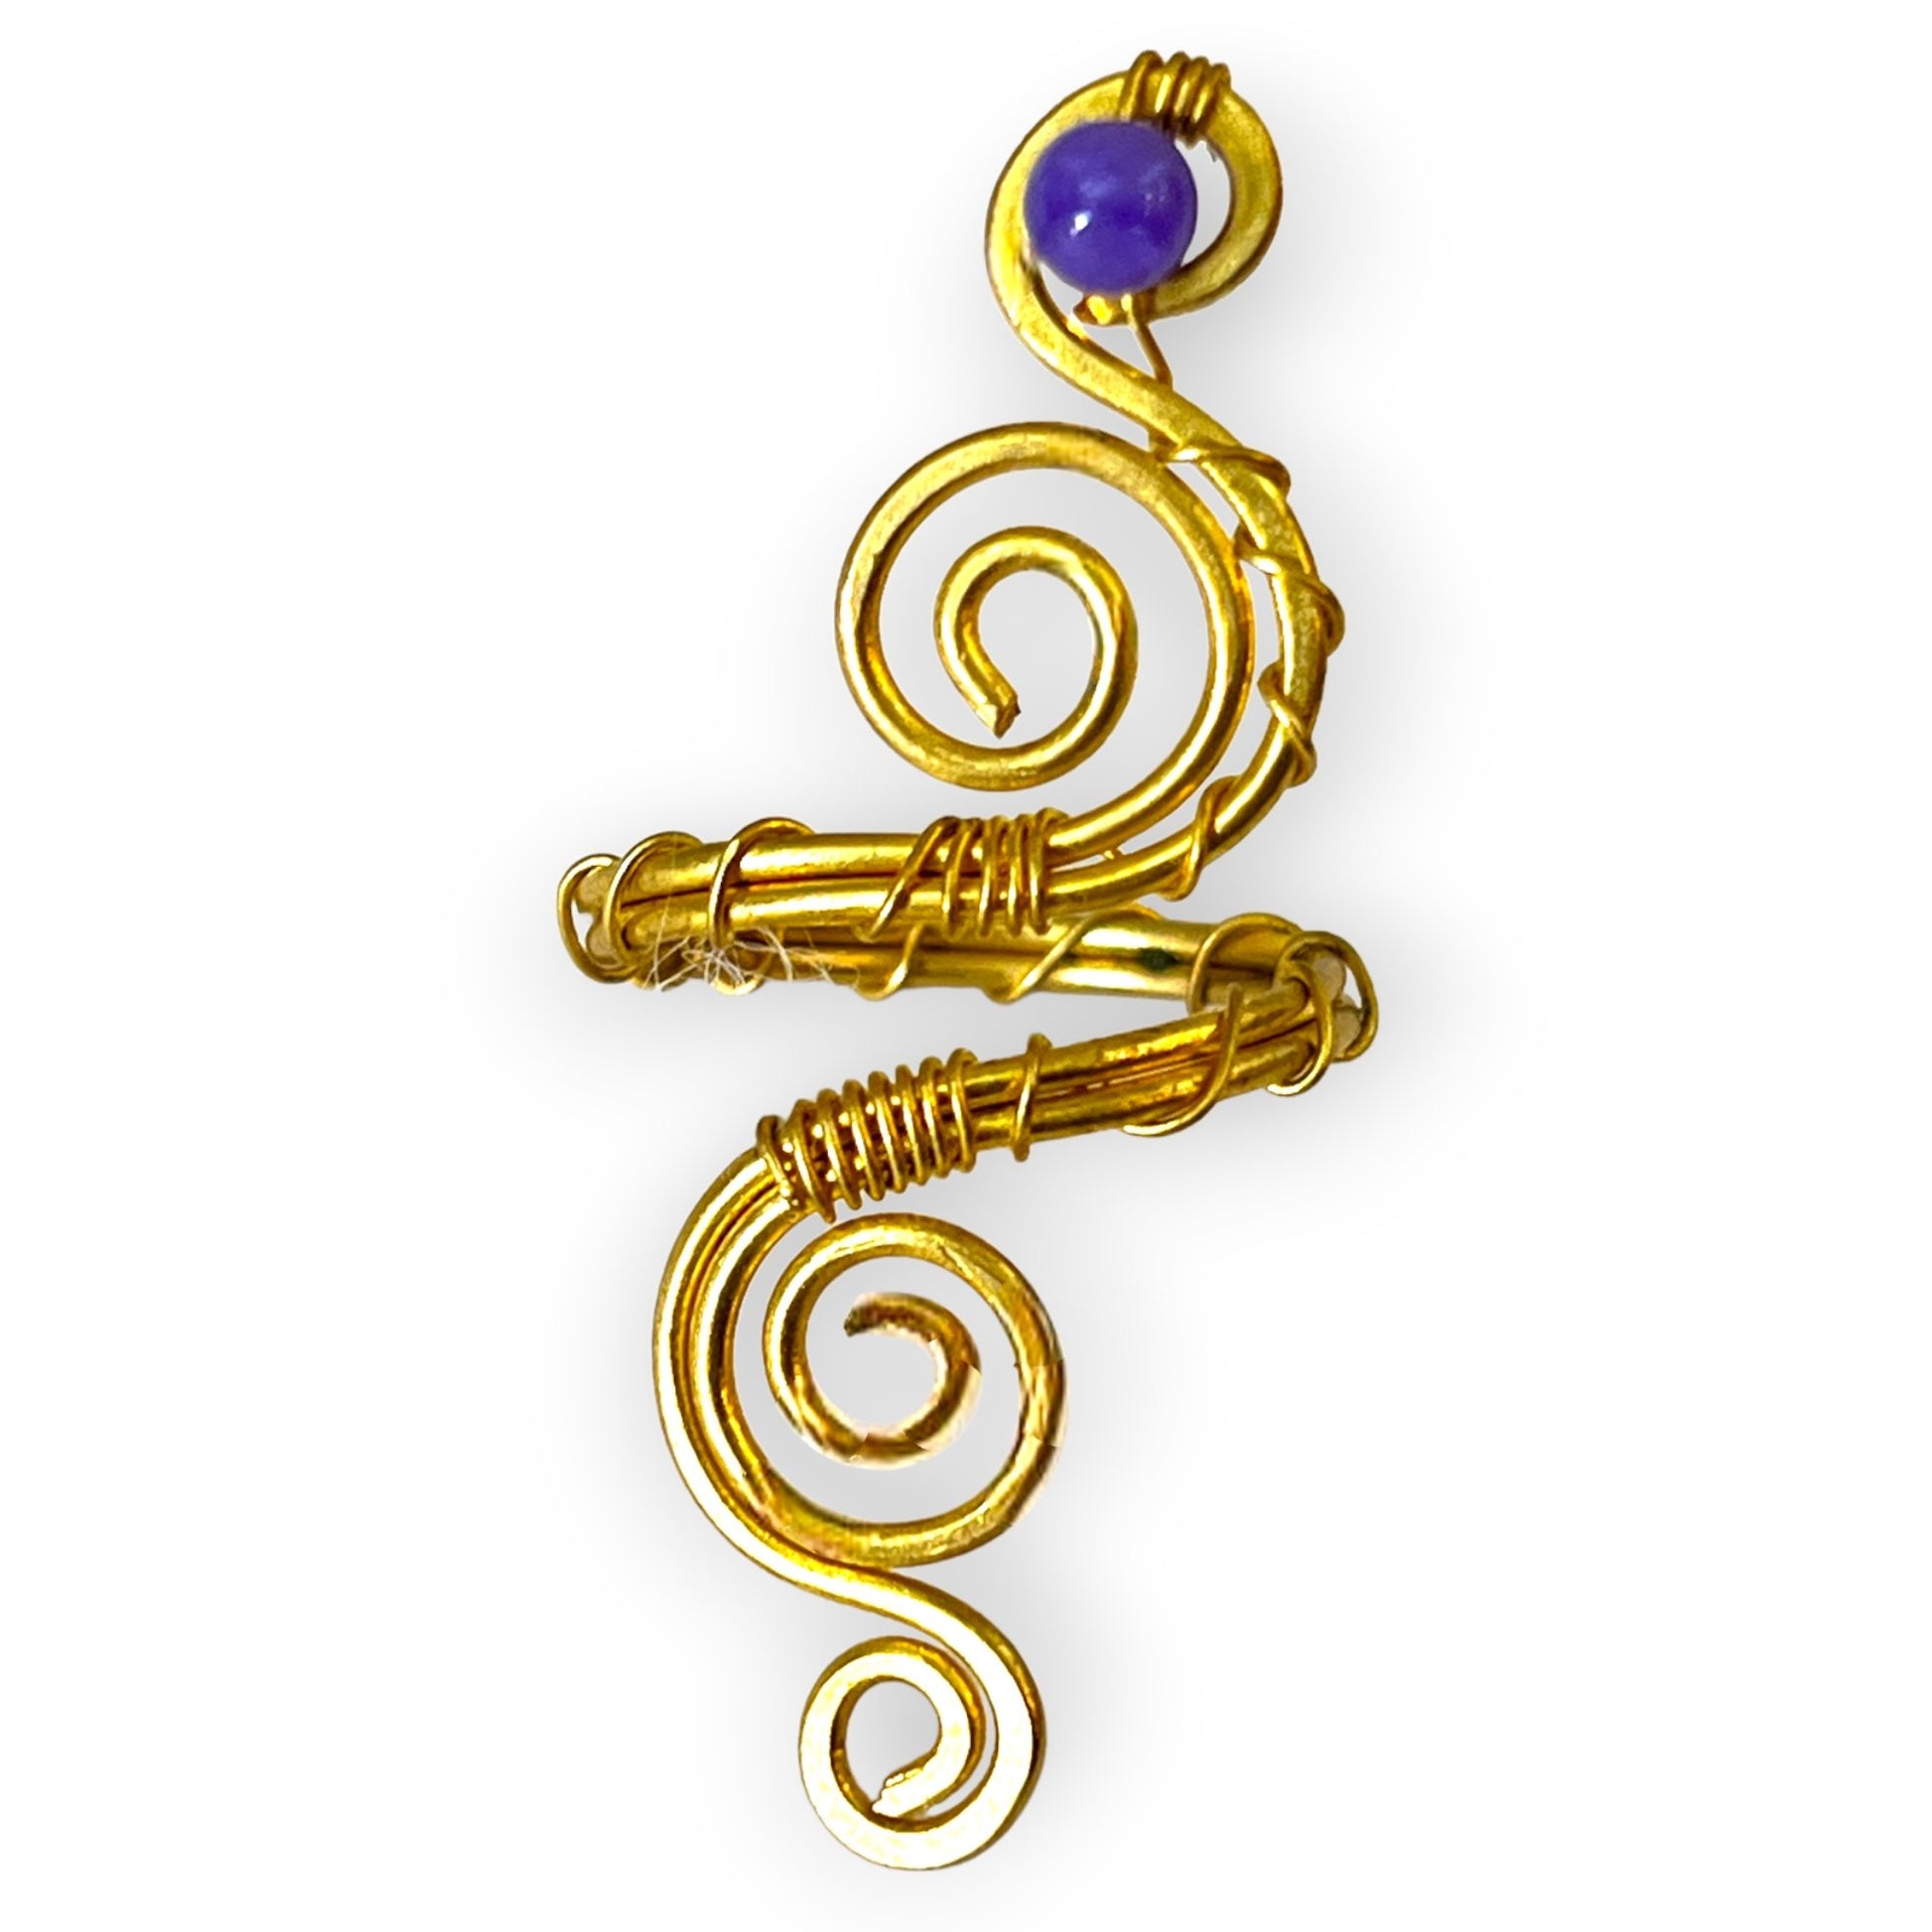 Serpentine style gemstone statement ring - Sundara Joon